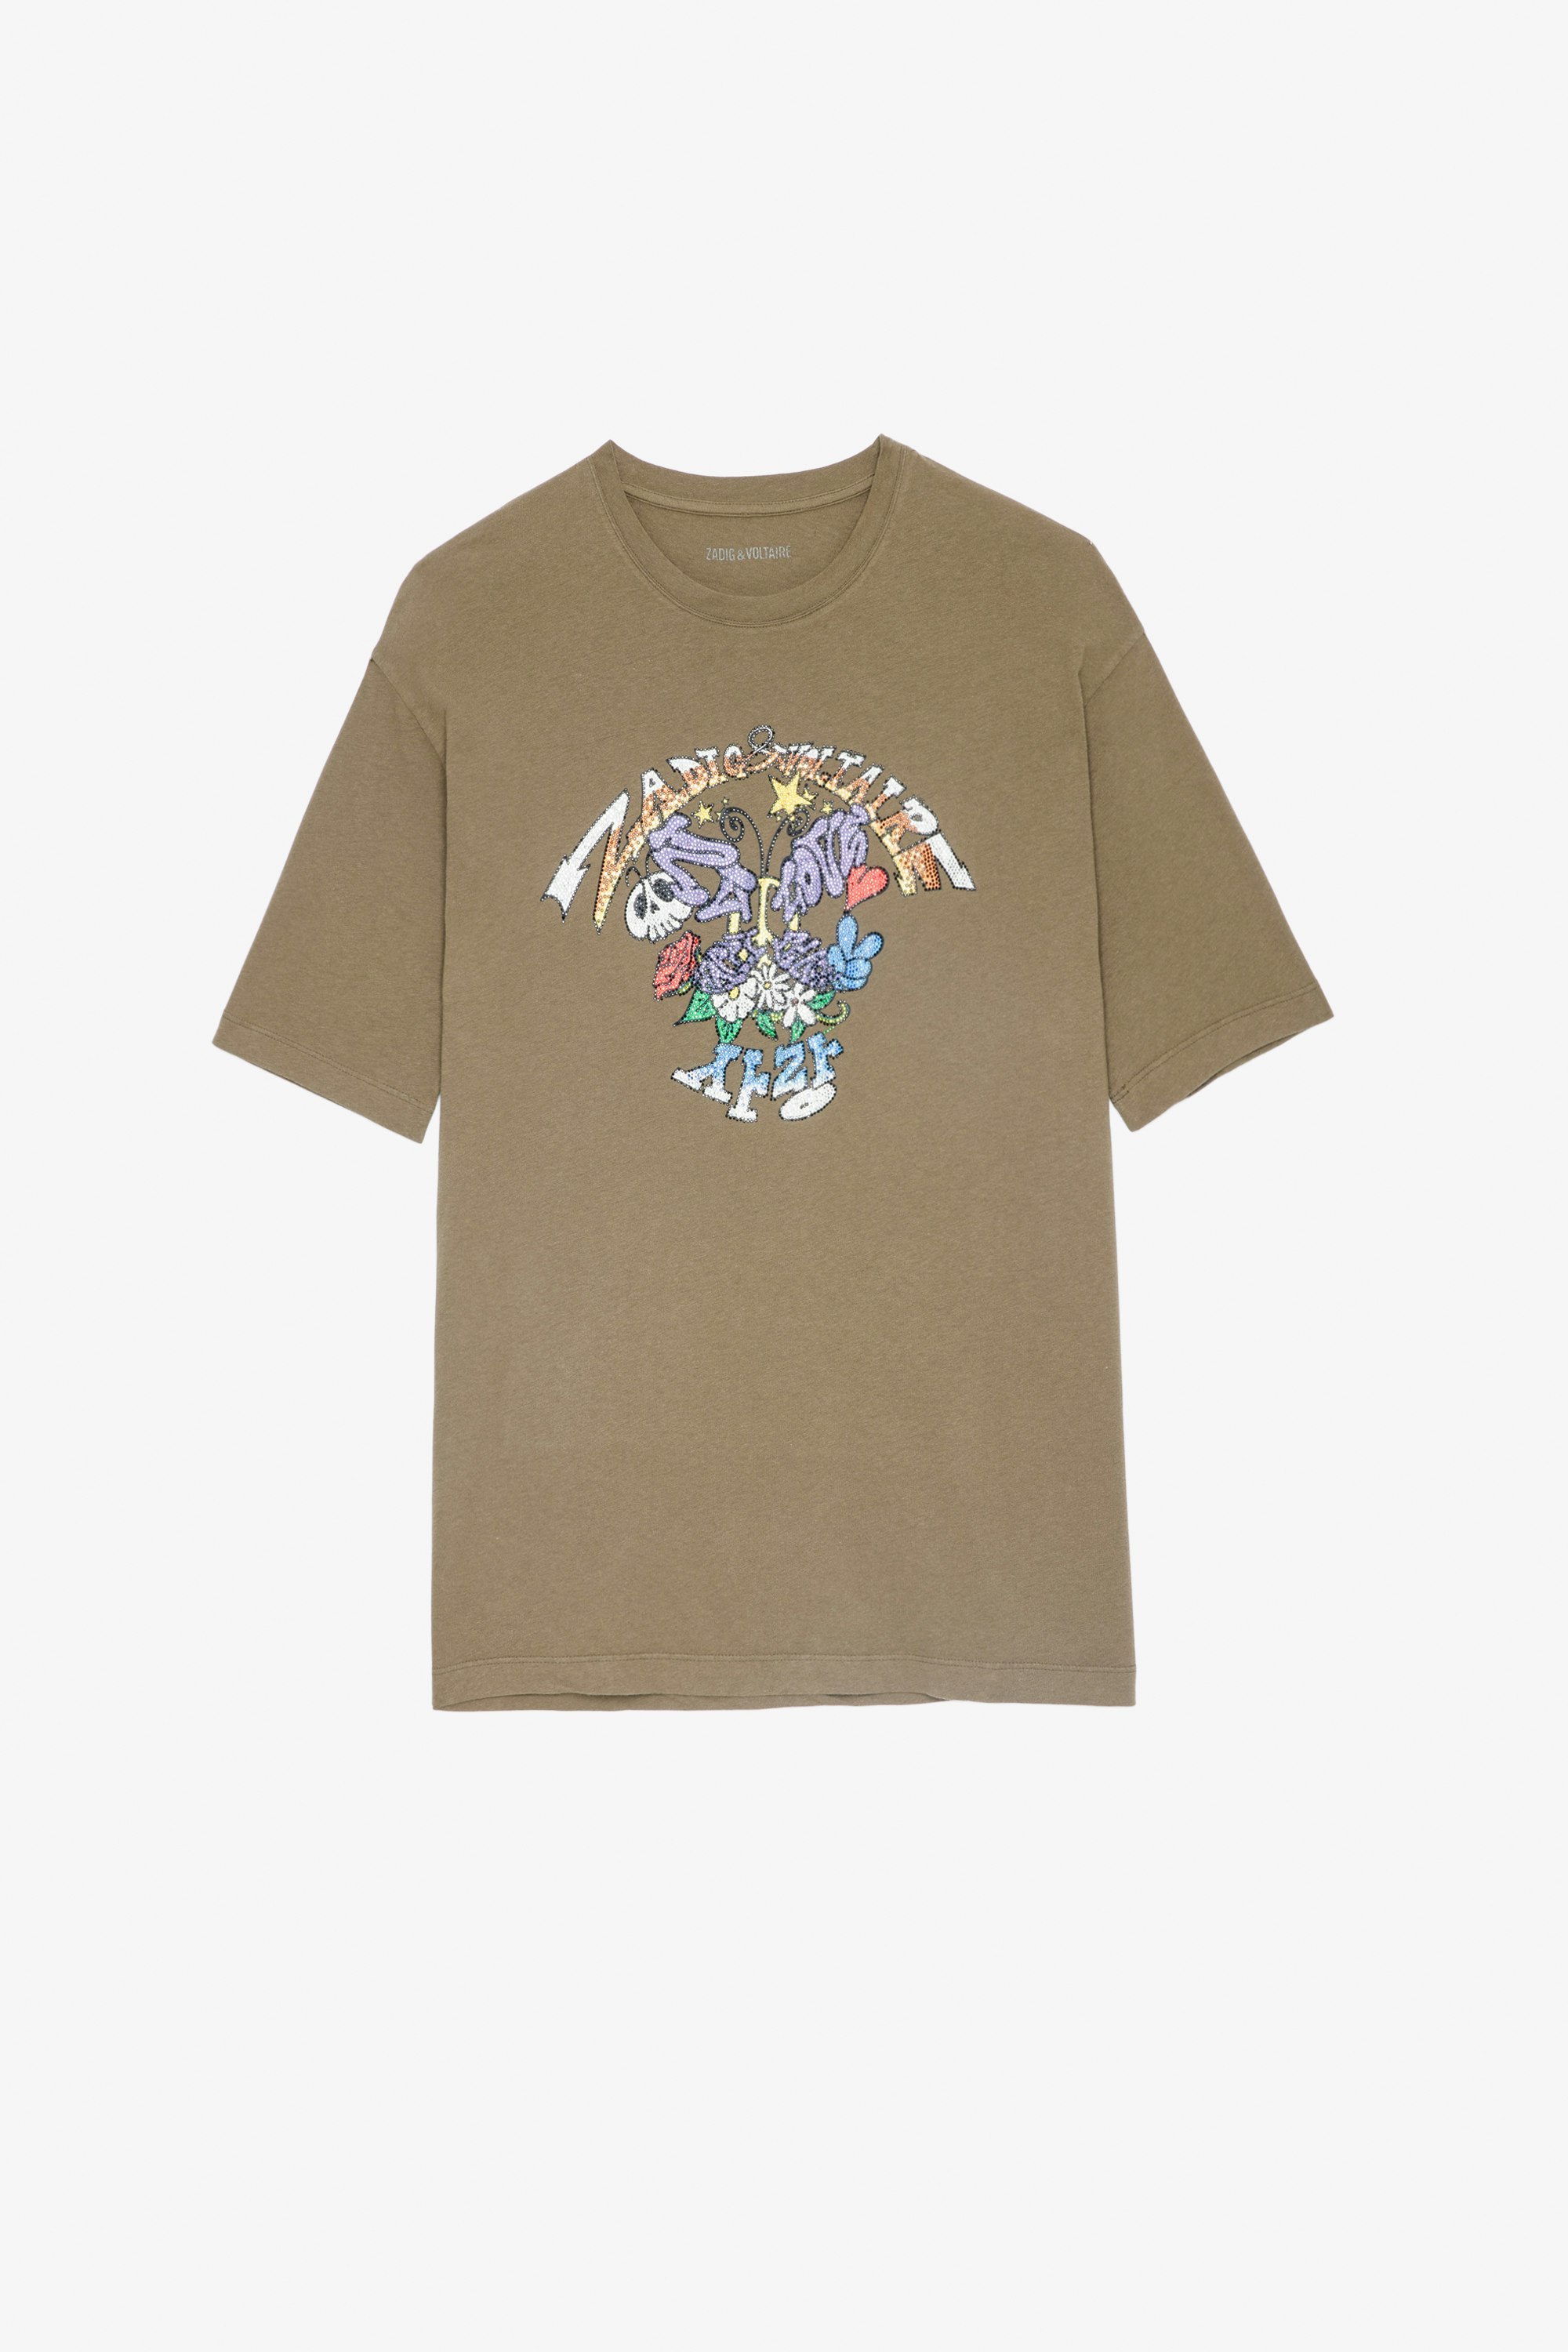 T-Shirt Suzy Damen-T-Shirt aus khakifarbener Baumwolle mit kristallverziertem Motiv von Core Cho